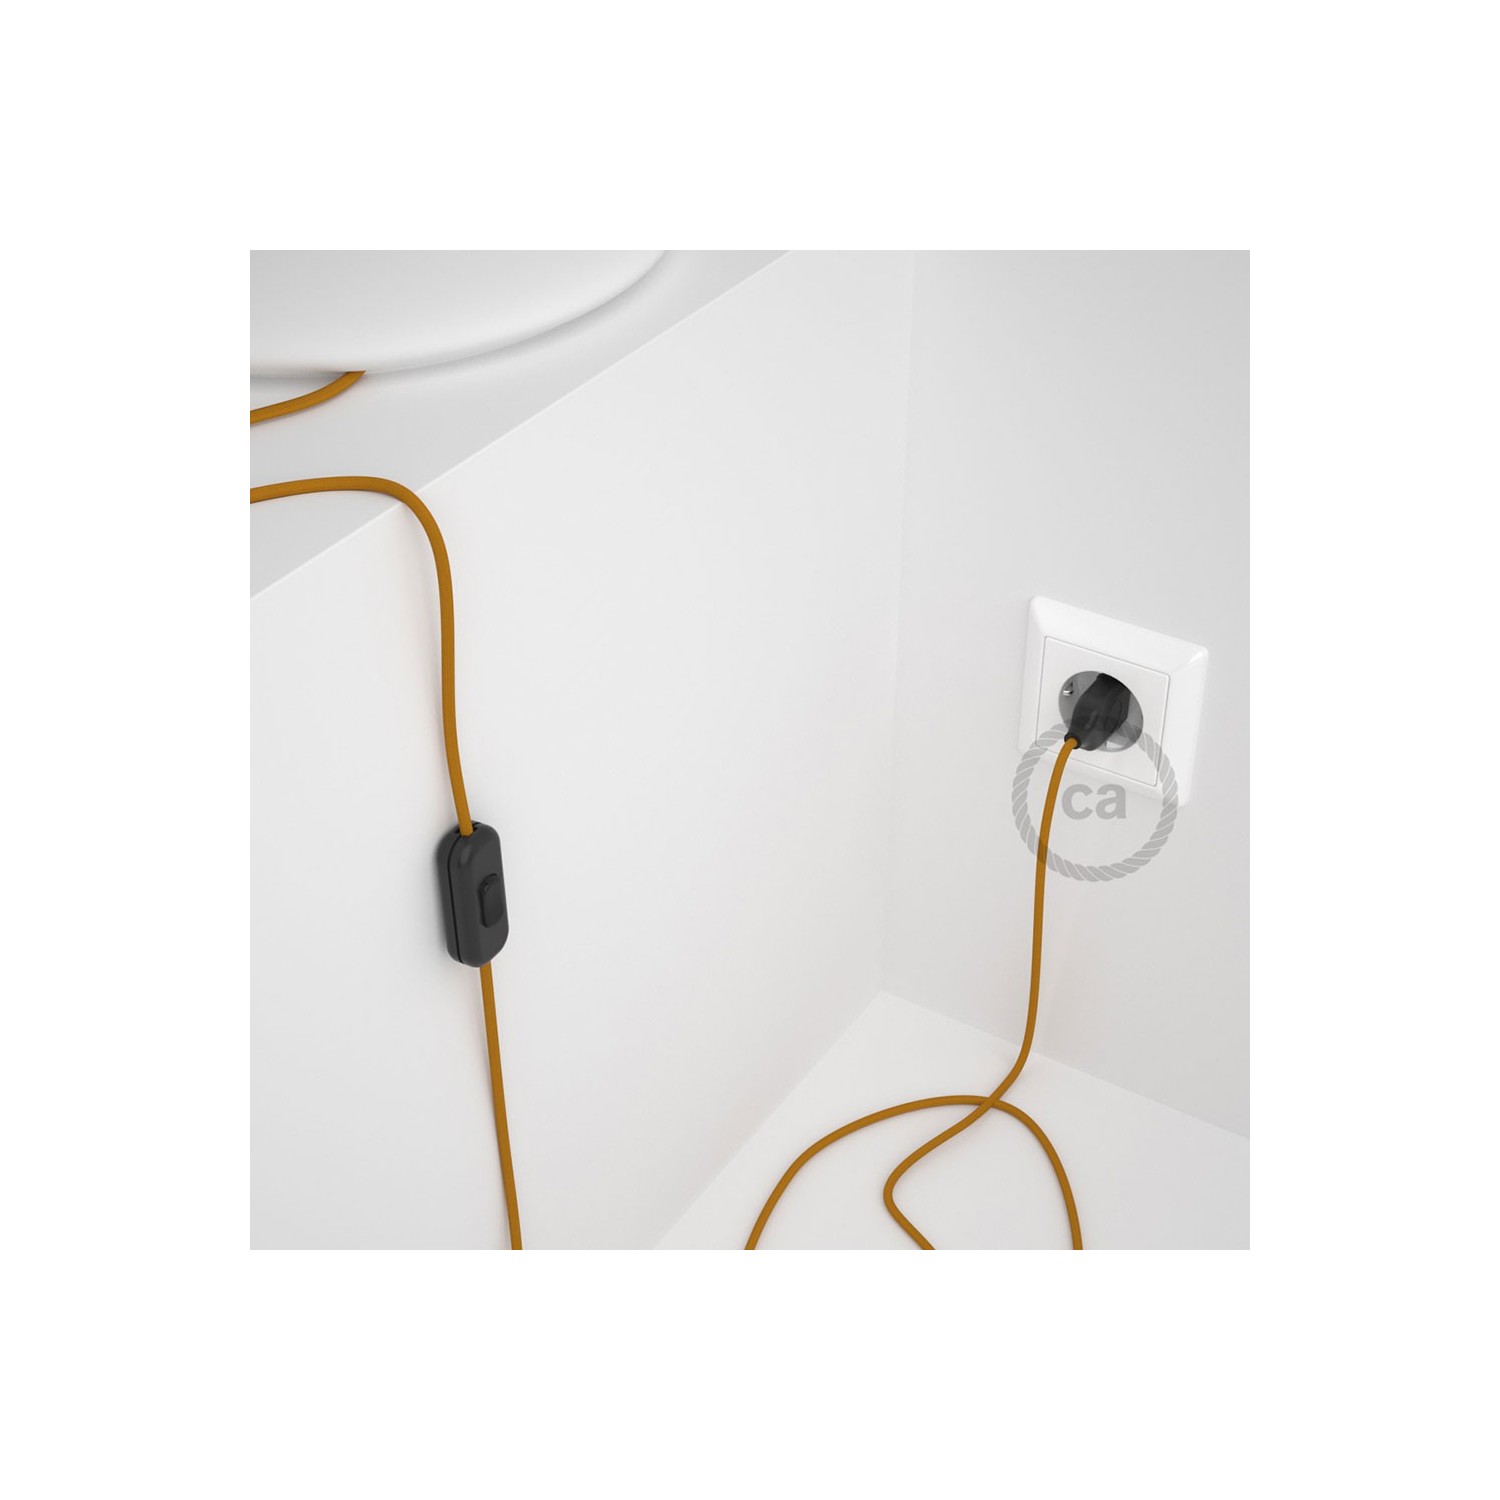 Cordon pour lampe, câble RM25 Effet Soie Moutarde 1,80 m. Choisissez la couleur de la fiche et de l'interrupteur!